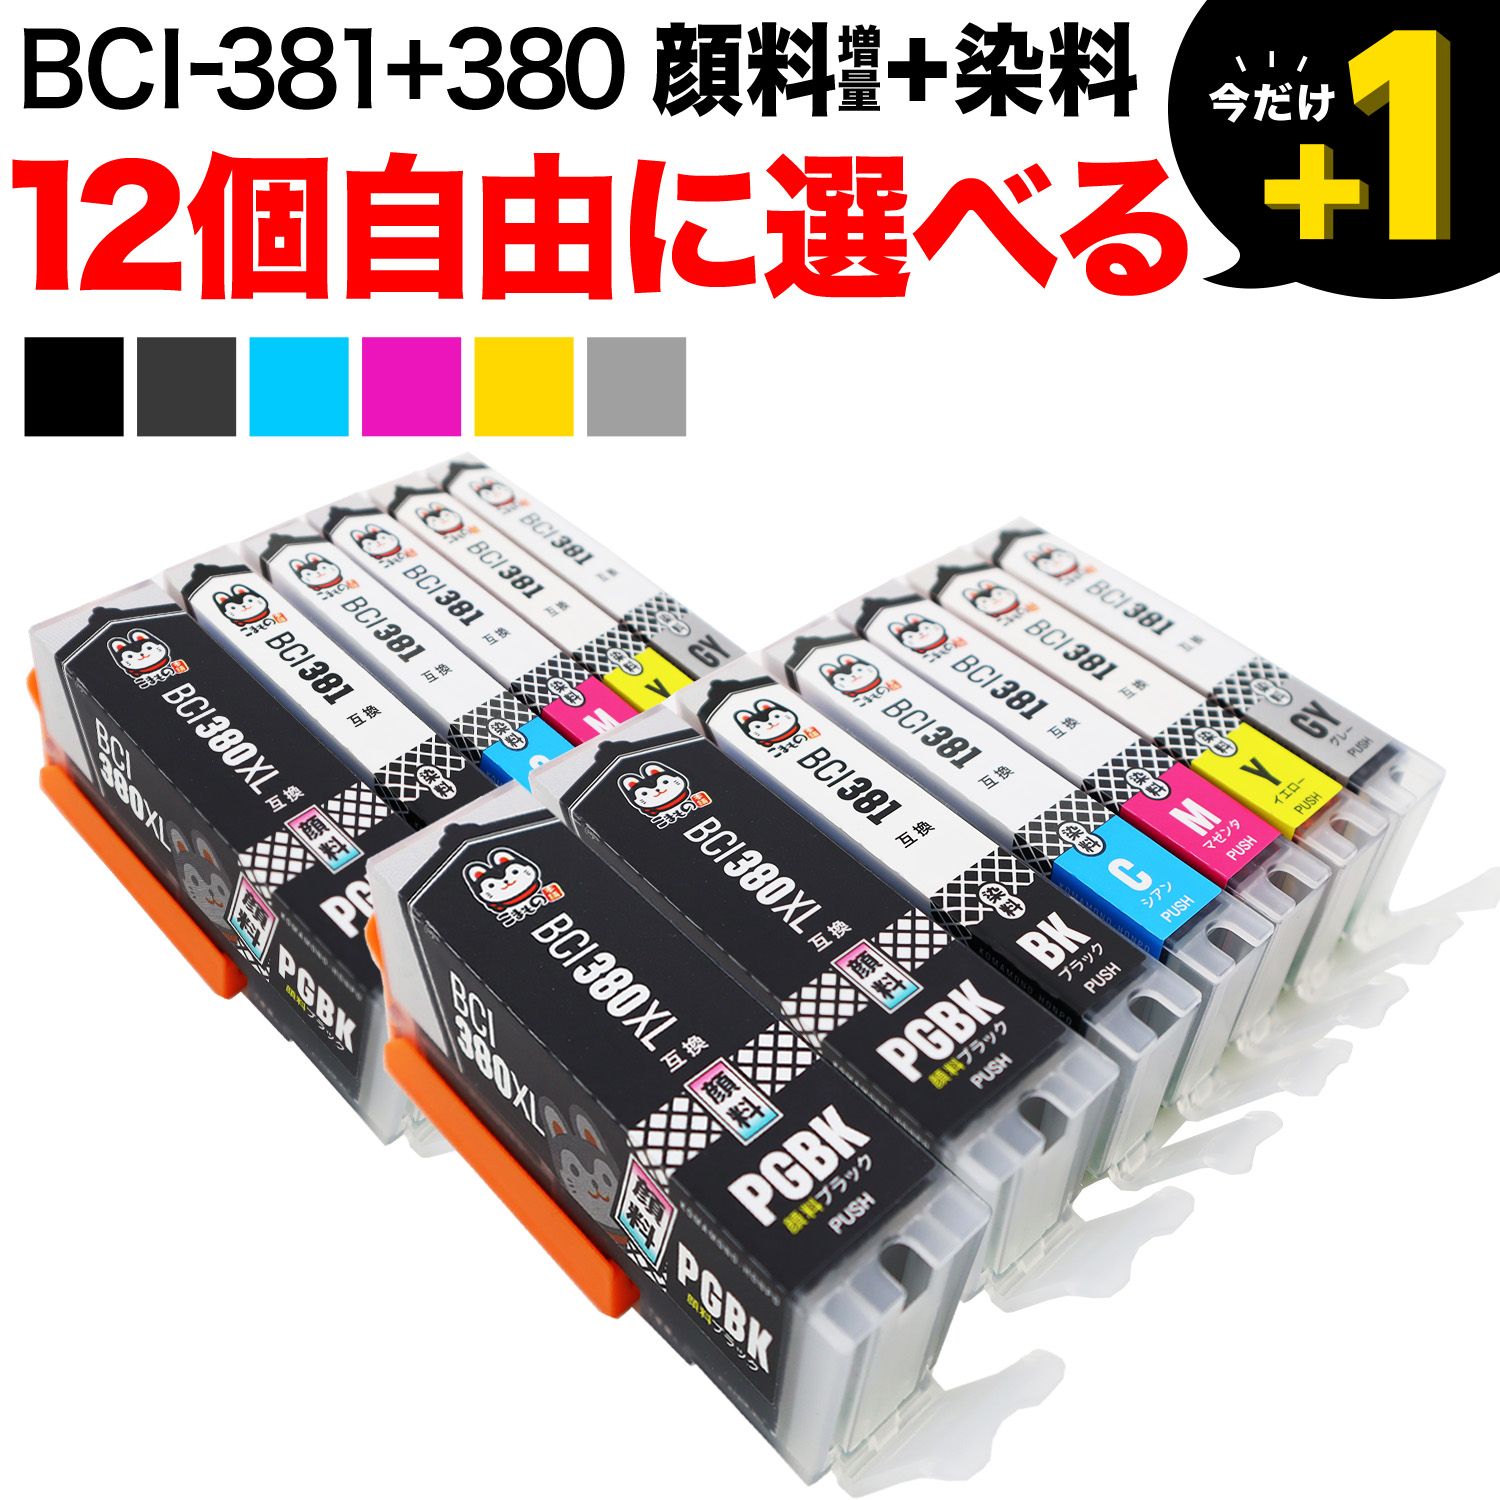 BCI-381+380 キヤノン用 互換インク 自由選択12個セット フリー